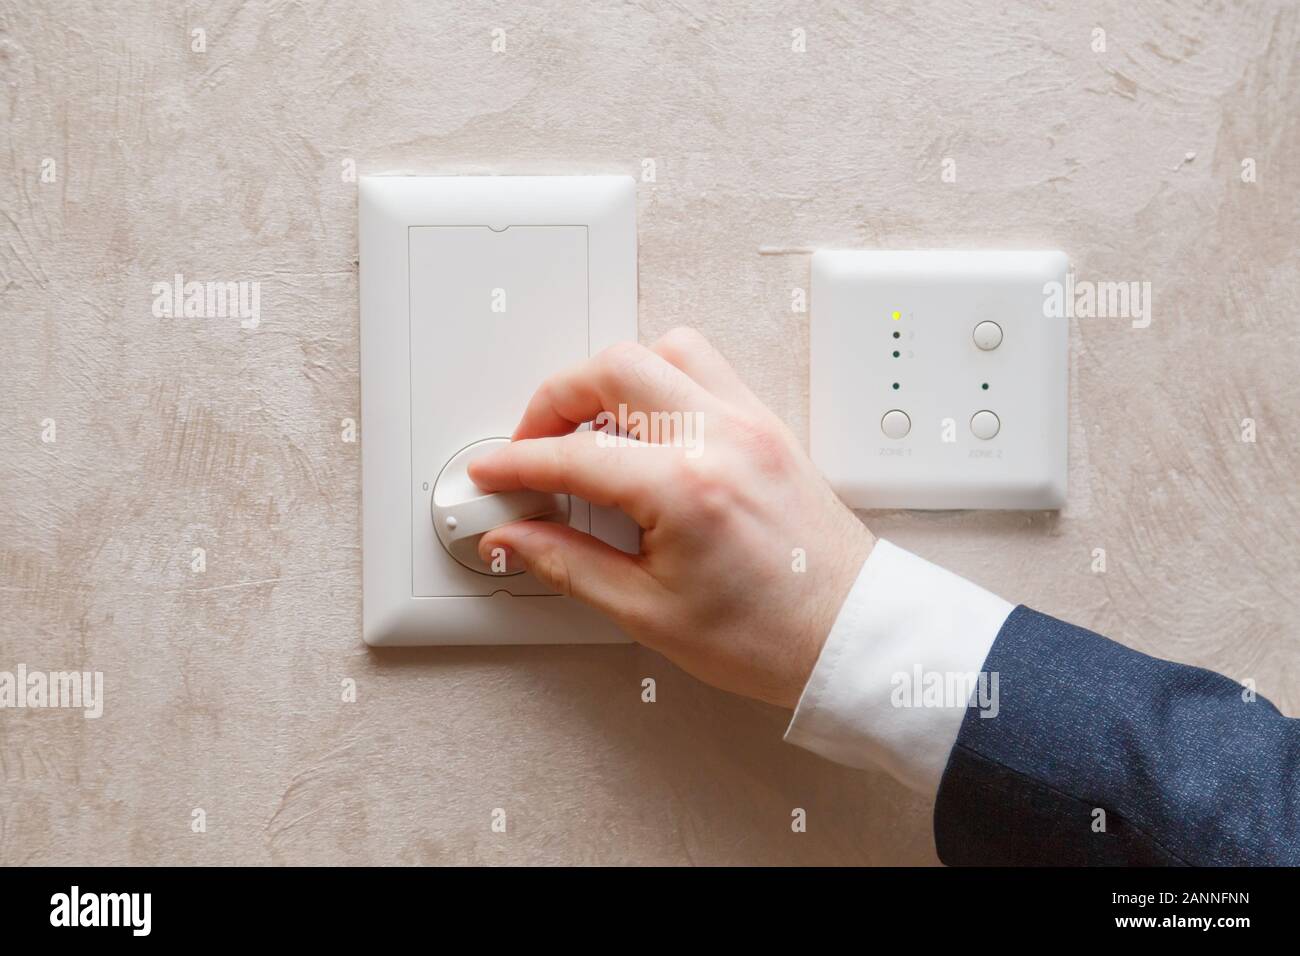 L'homme la régulation de la température sur le thermostat contrôleur de climatisation sur le mur Banque D'Images